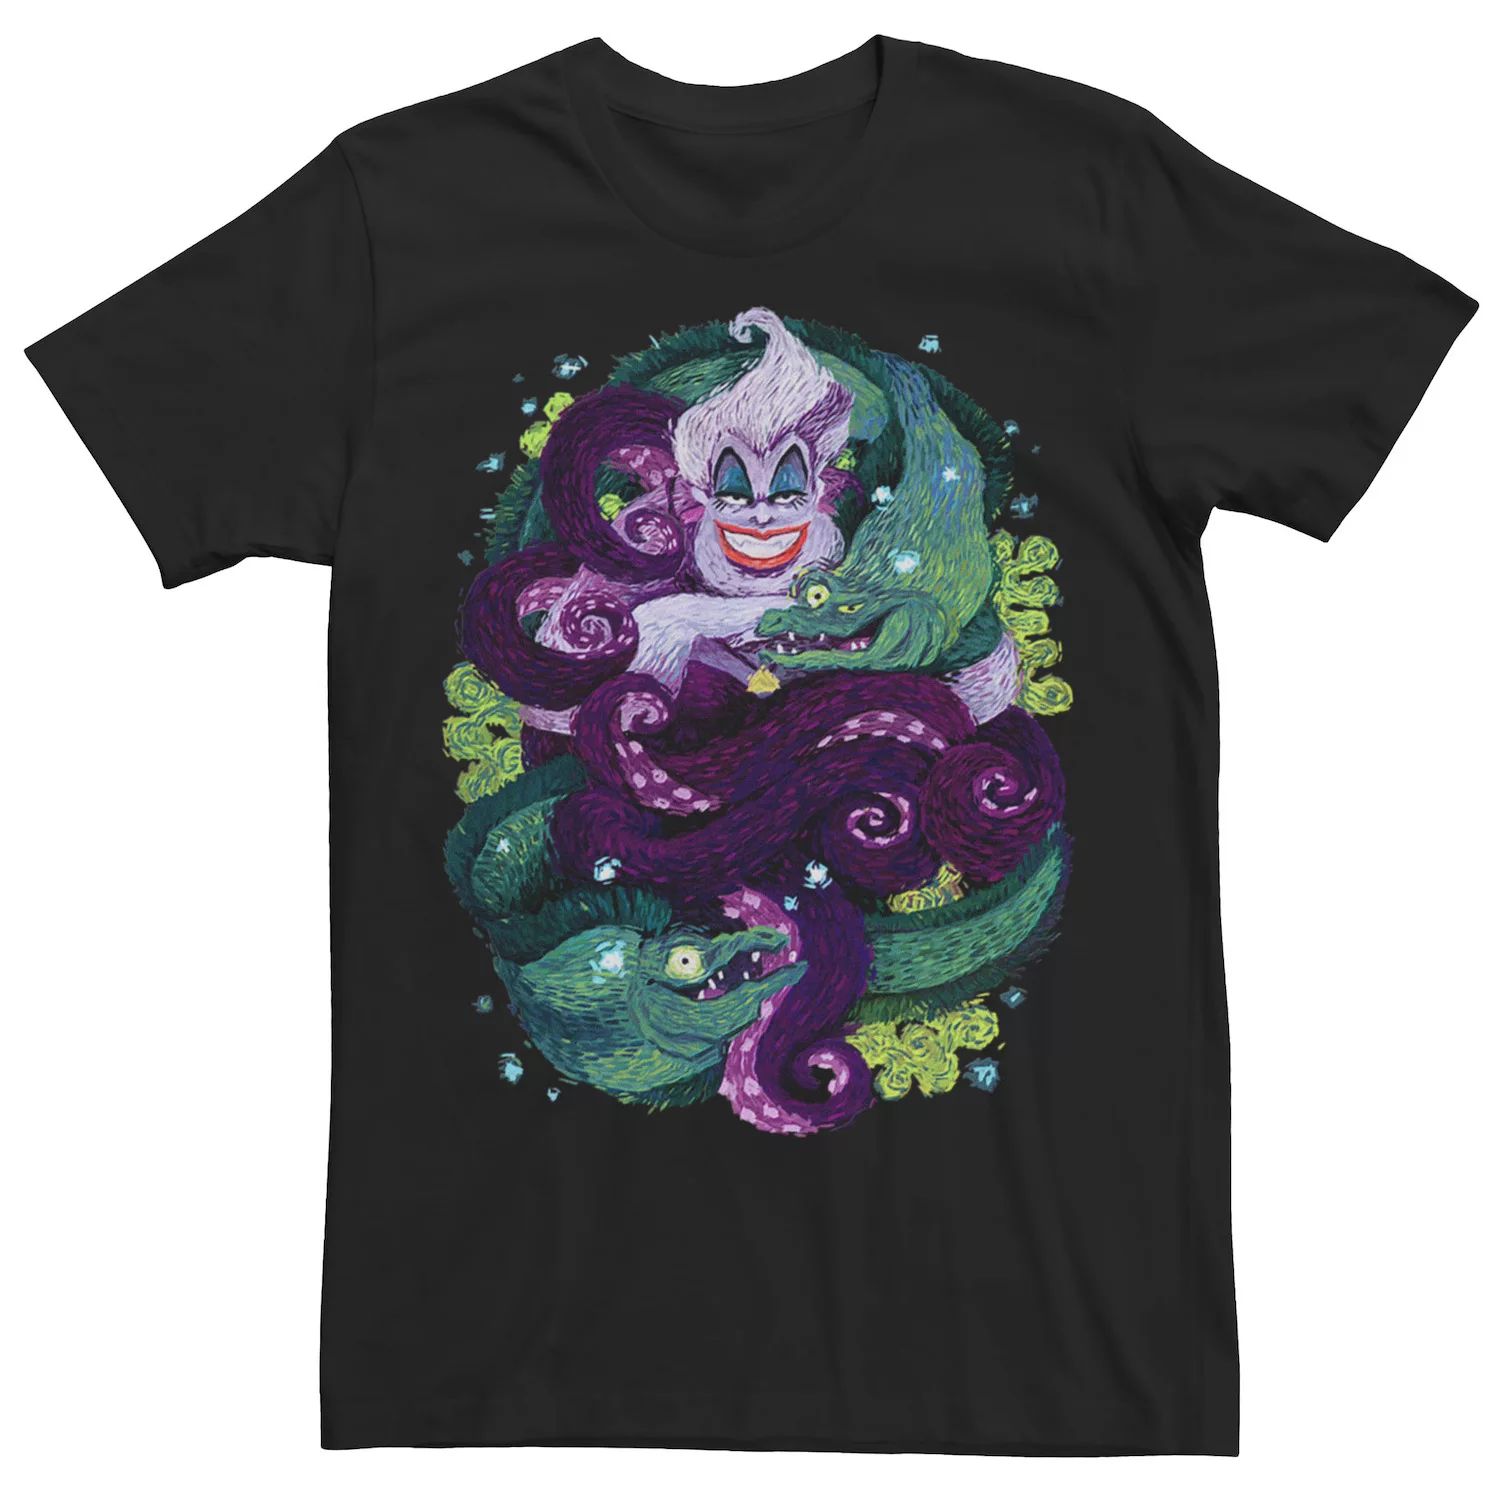 Мужская футболка Disney с изображением Русалочки Урсулы и морской ведьмы